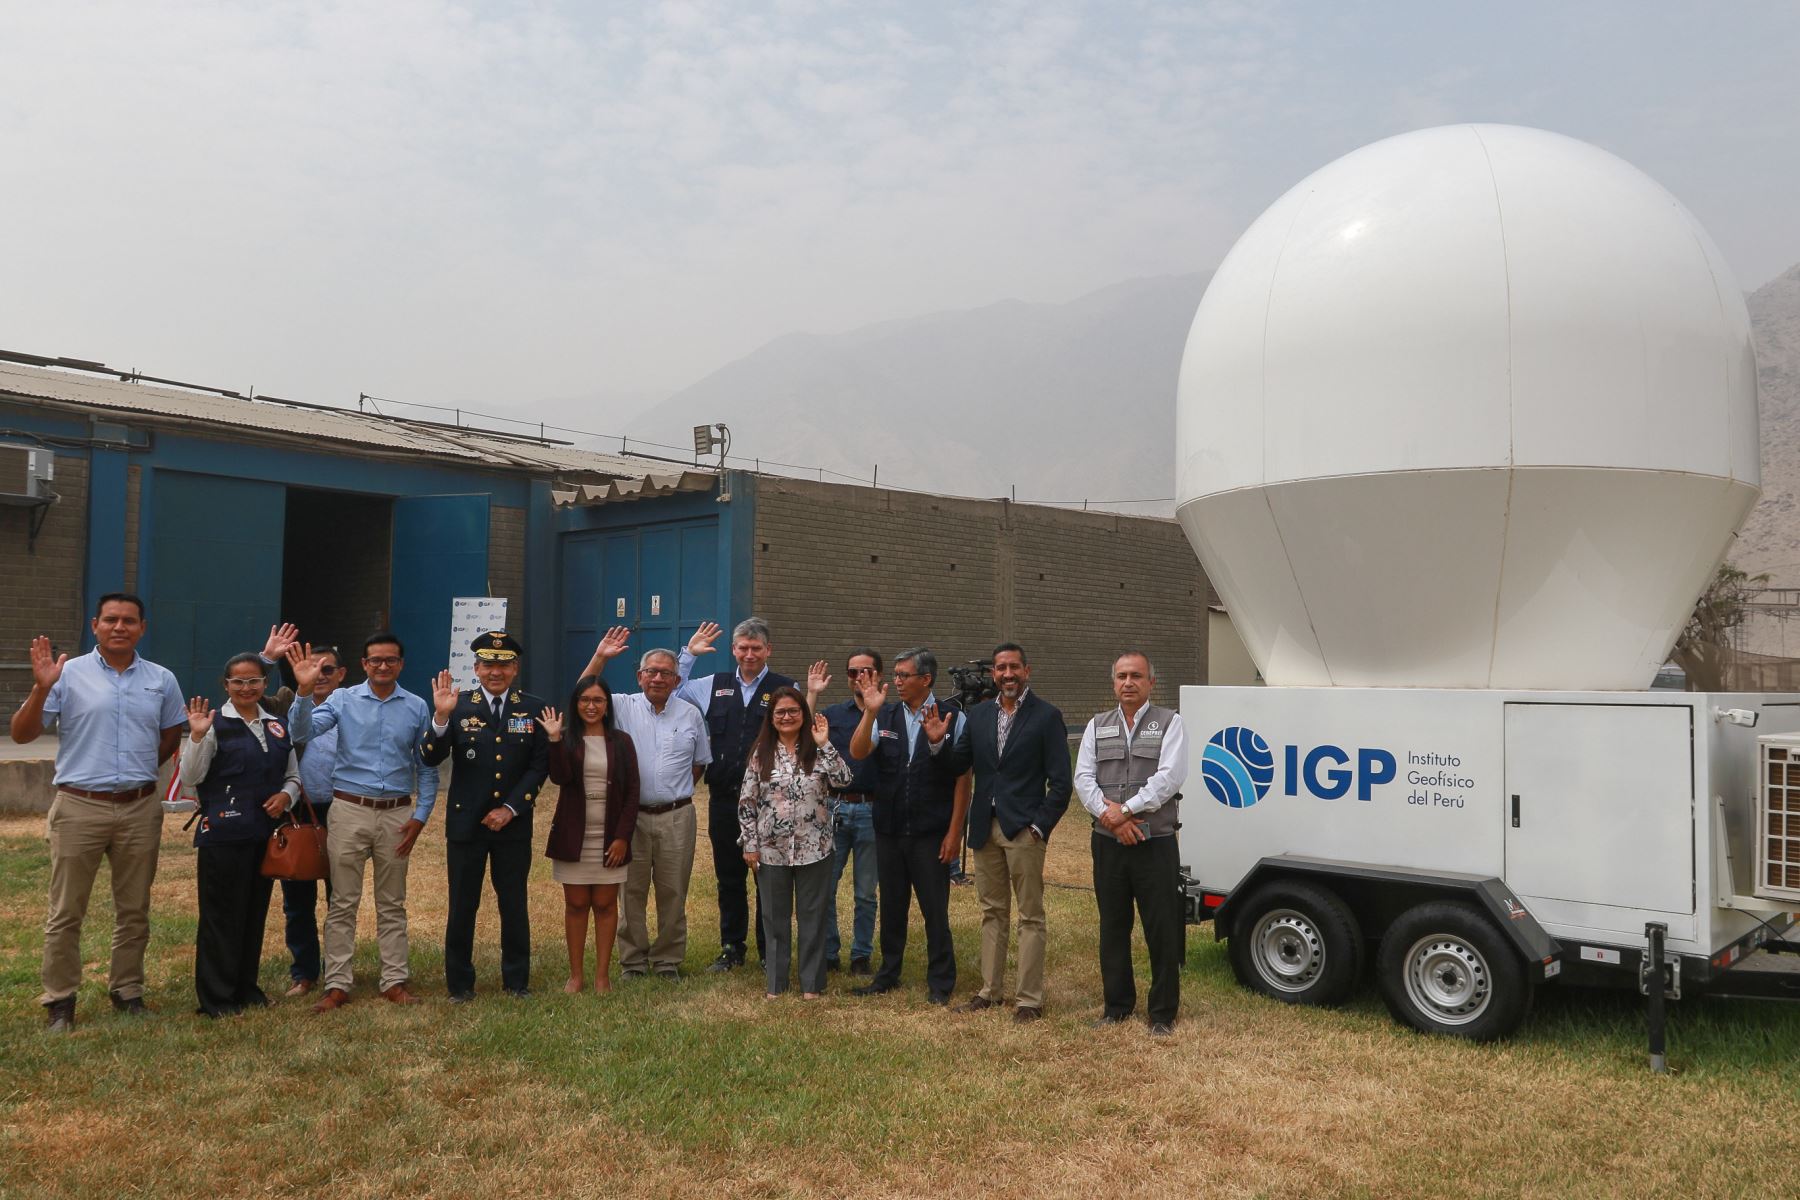 El primer radar meteorológico construido por científicos peruanos fue presentado por el Instituto Geofísico del Perú (IGP) y el Ministerio del Ambiente (Minam), en el Radio Observatorio de Jicamarca, ubicado al este de Lima.
Foto: ANDINA/Héctor Vinces